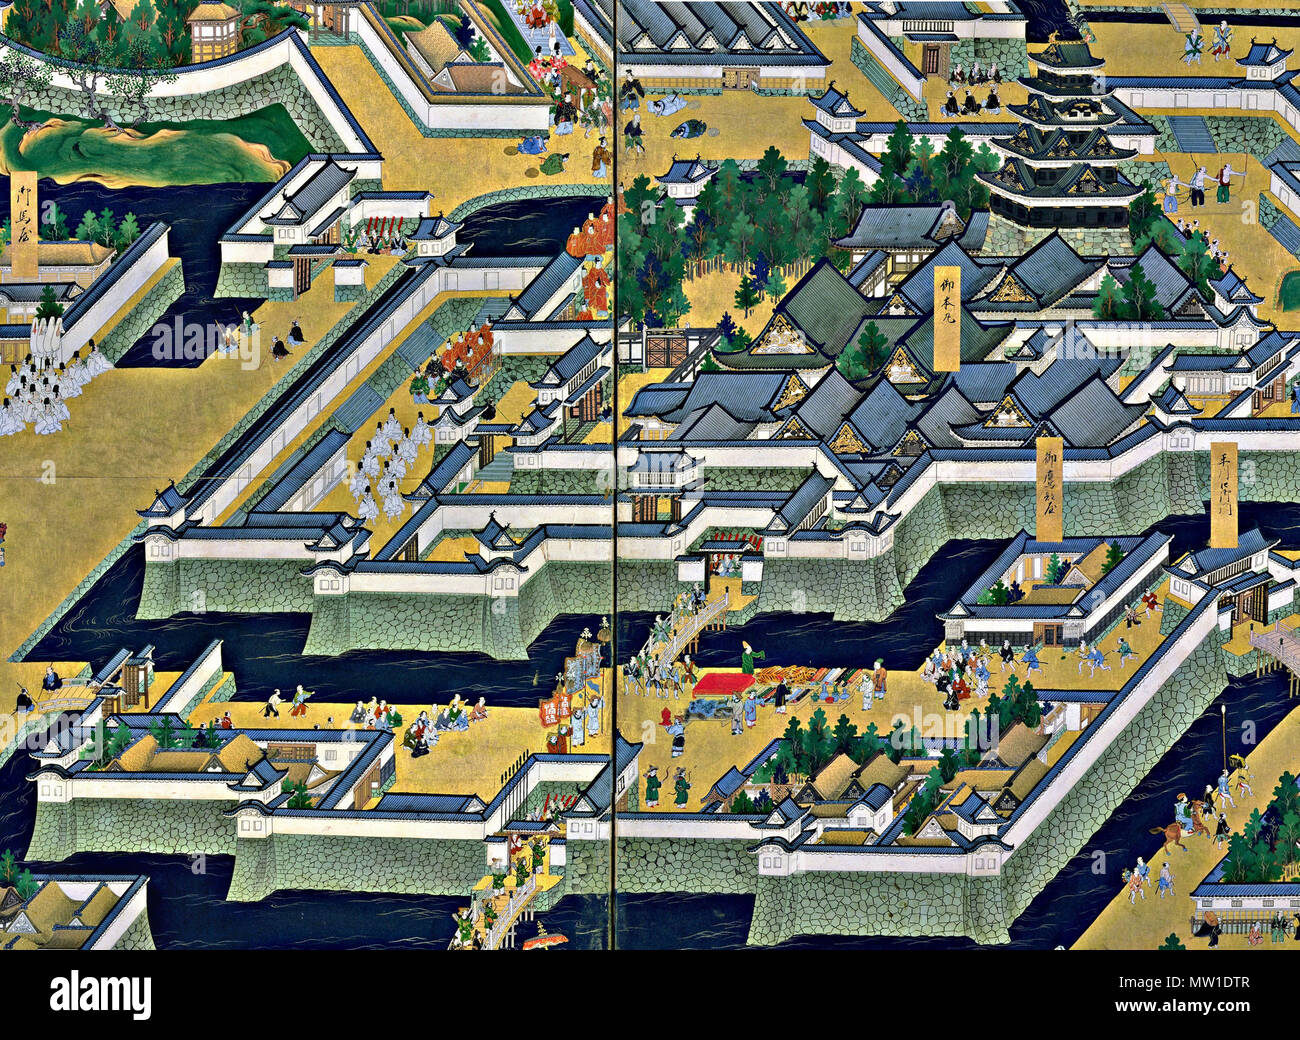 . In alto al centro del primo pannello a sinistra dello schermo. Enciente centrale del castello di Edo, torre di castello, Bairinzaka, Hirakawaguchi Gate. Il castello di Edo torre (superiore medio del primo pannello a sinistra dello schermo). Il castello di Edo telai a torre grande nella schermata di sinistra come se per accentuare Iemitsu's grand imprese. Questa torre fu il terzo ad essere costruita per il castello di Edo. Essa è stata completata nel 1638 (Kan'ei 15). La sua altezza dalla base è di oltre 60 metri. Durante il grande incendio Meireki del 1657 (Meireki 3), tuttavia, la torre fu distrutta e mai più ricostruita nuovamente. 'Vista di Edo' (Edo zu) coppia di sei-pannello schermi di piegatura (XVII cen Foto Stock